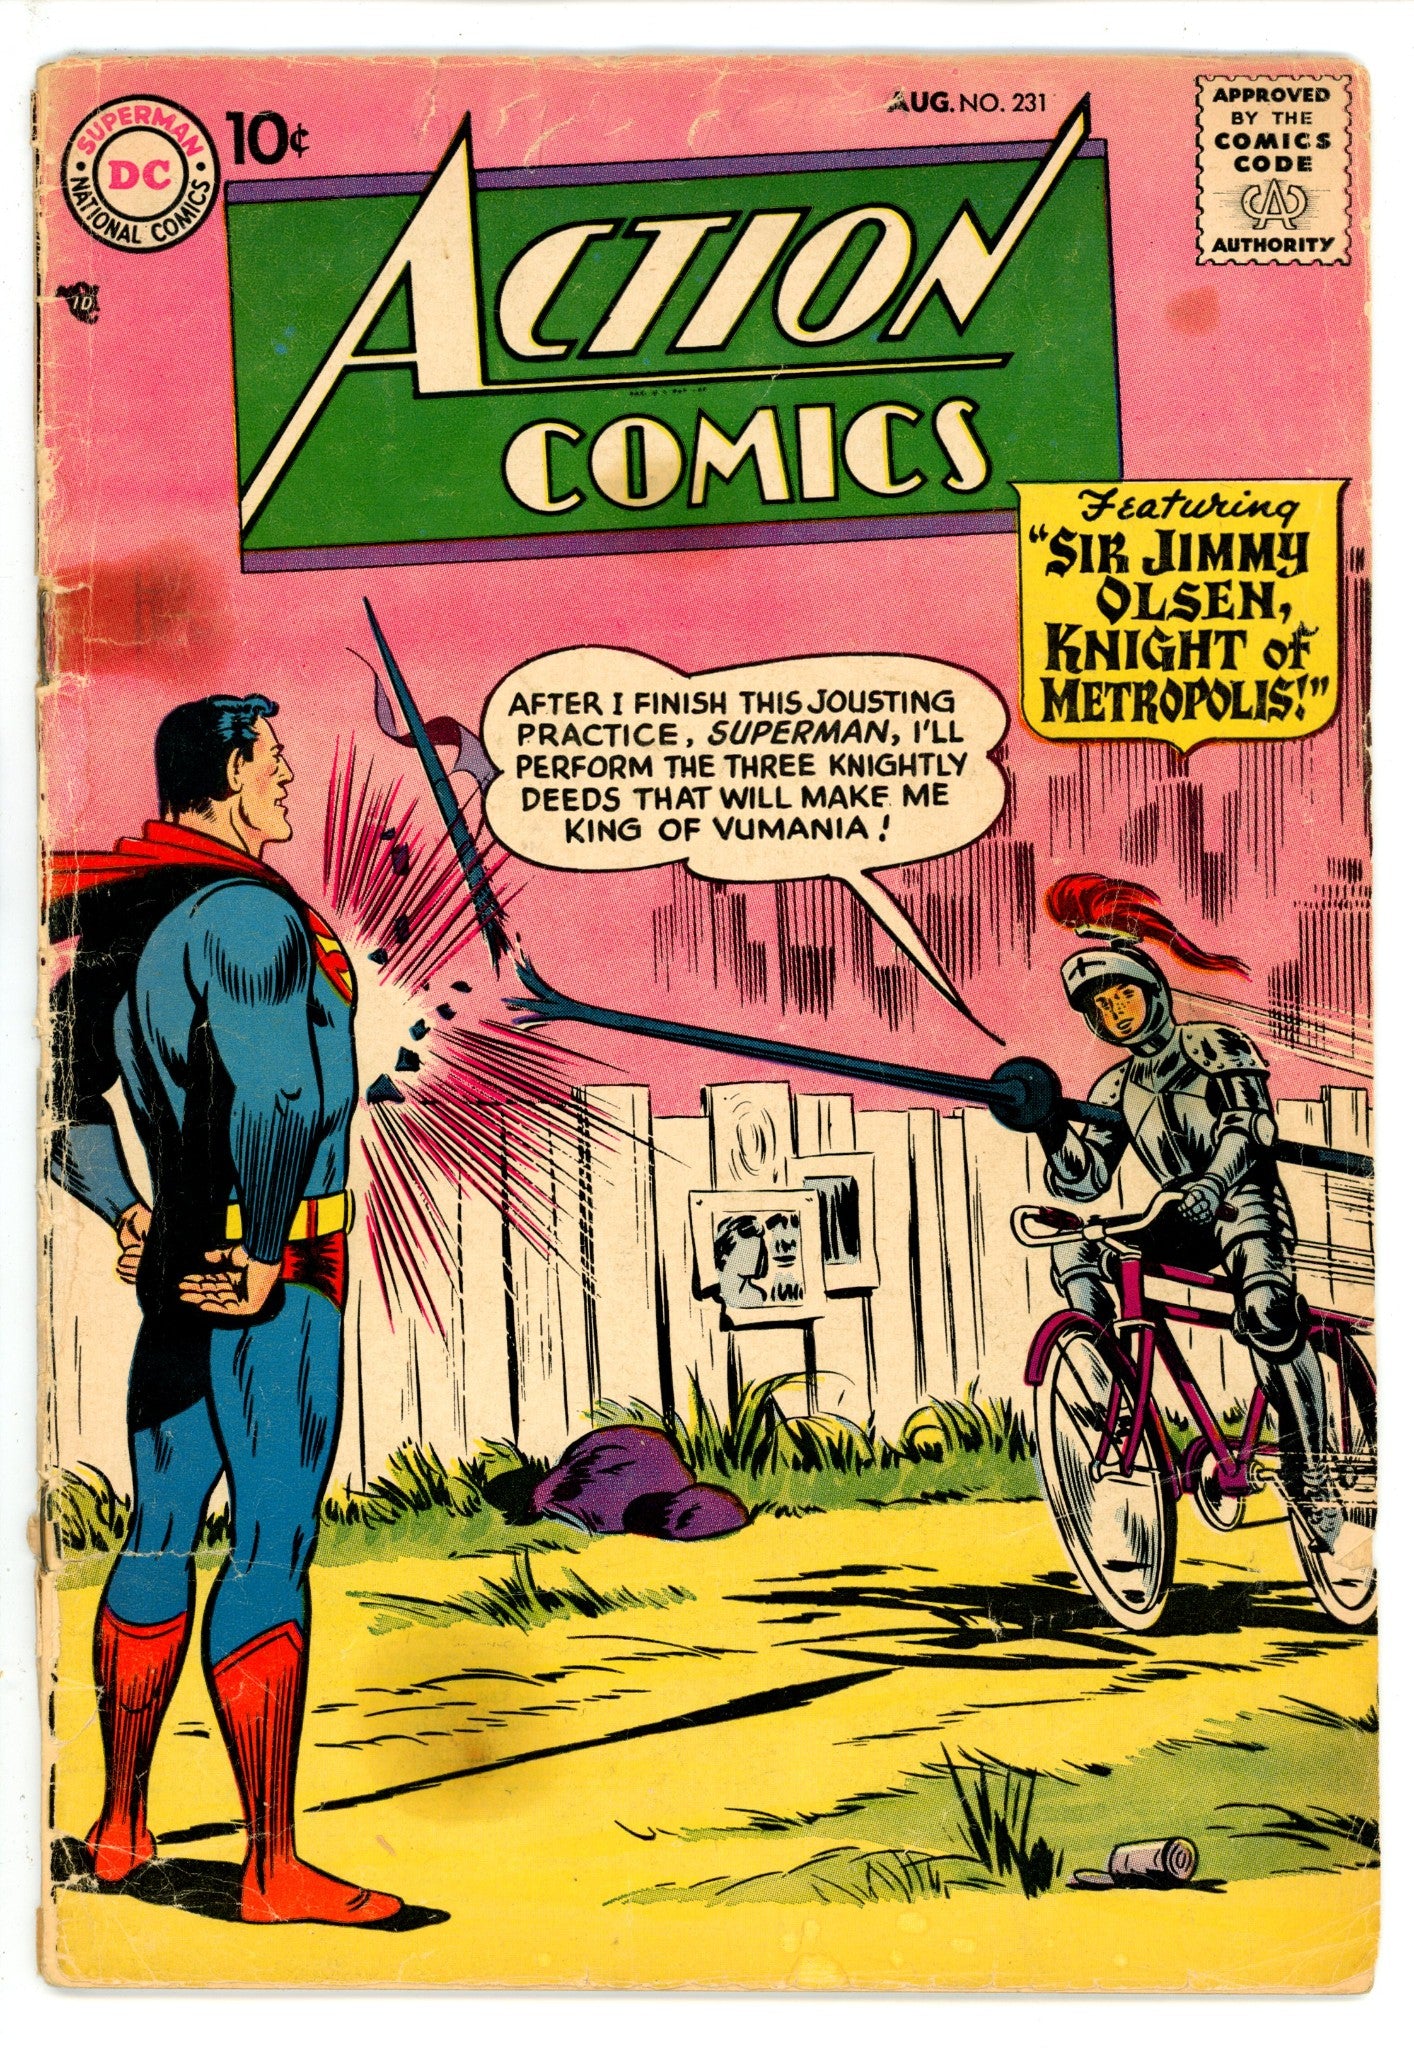 Action Comics Vol 1 231 FR/GD